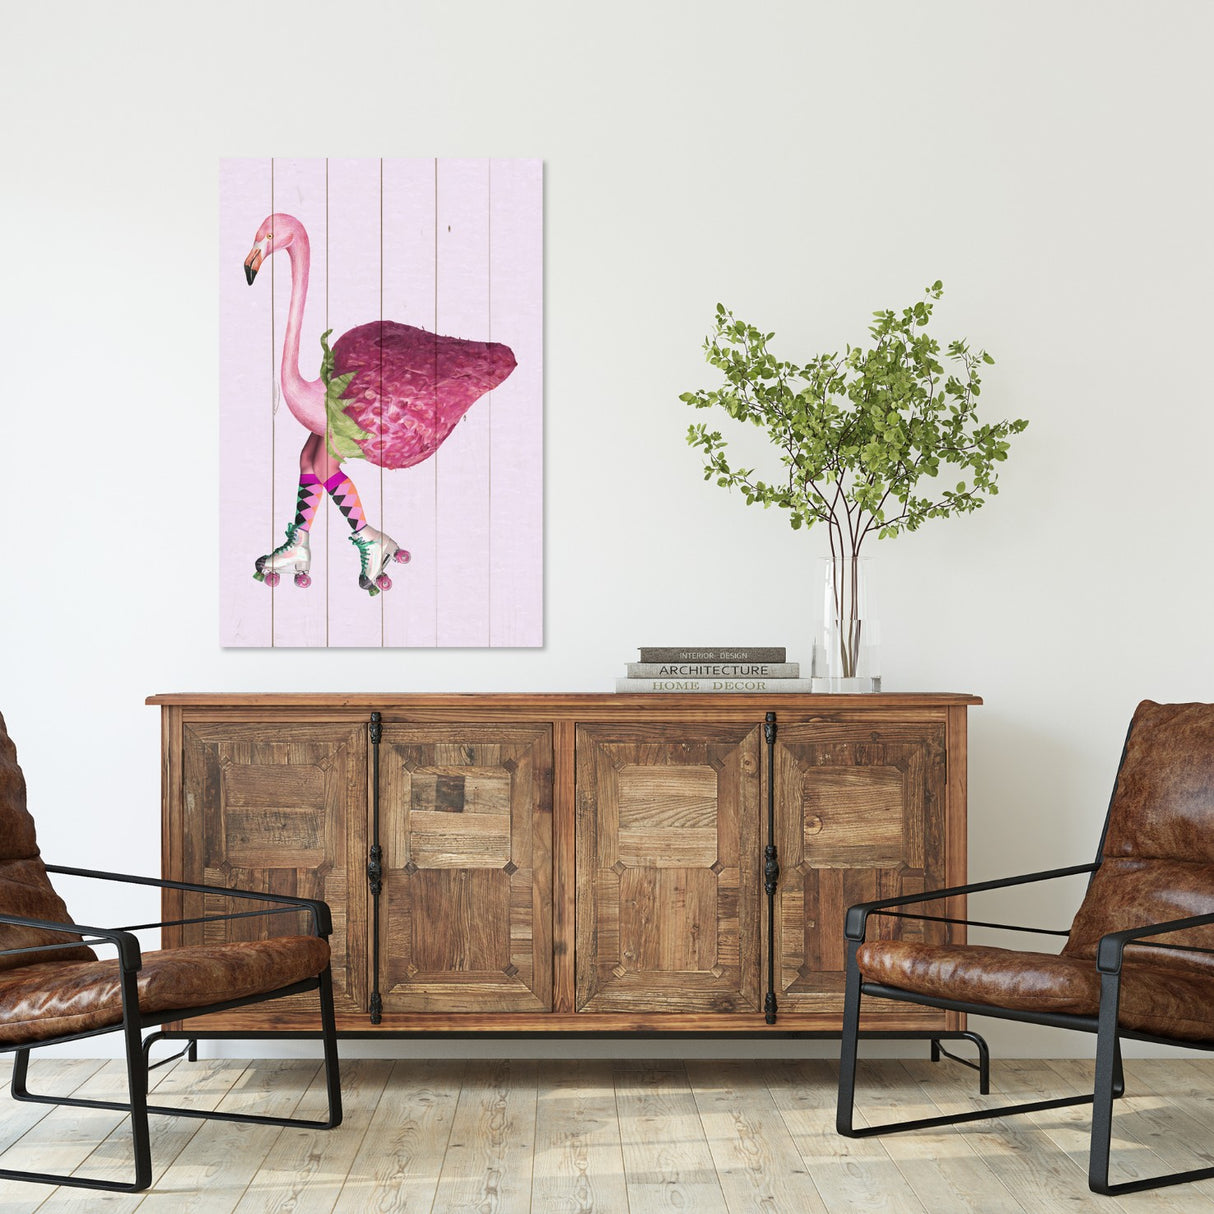 Obraz na drewnie Flaming z truskawką - Pink Flamingo with Strawberry